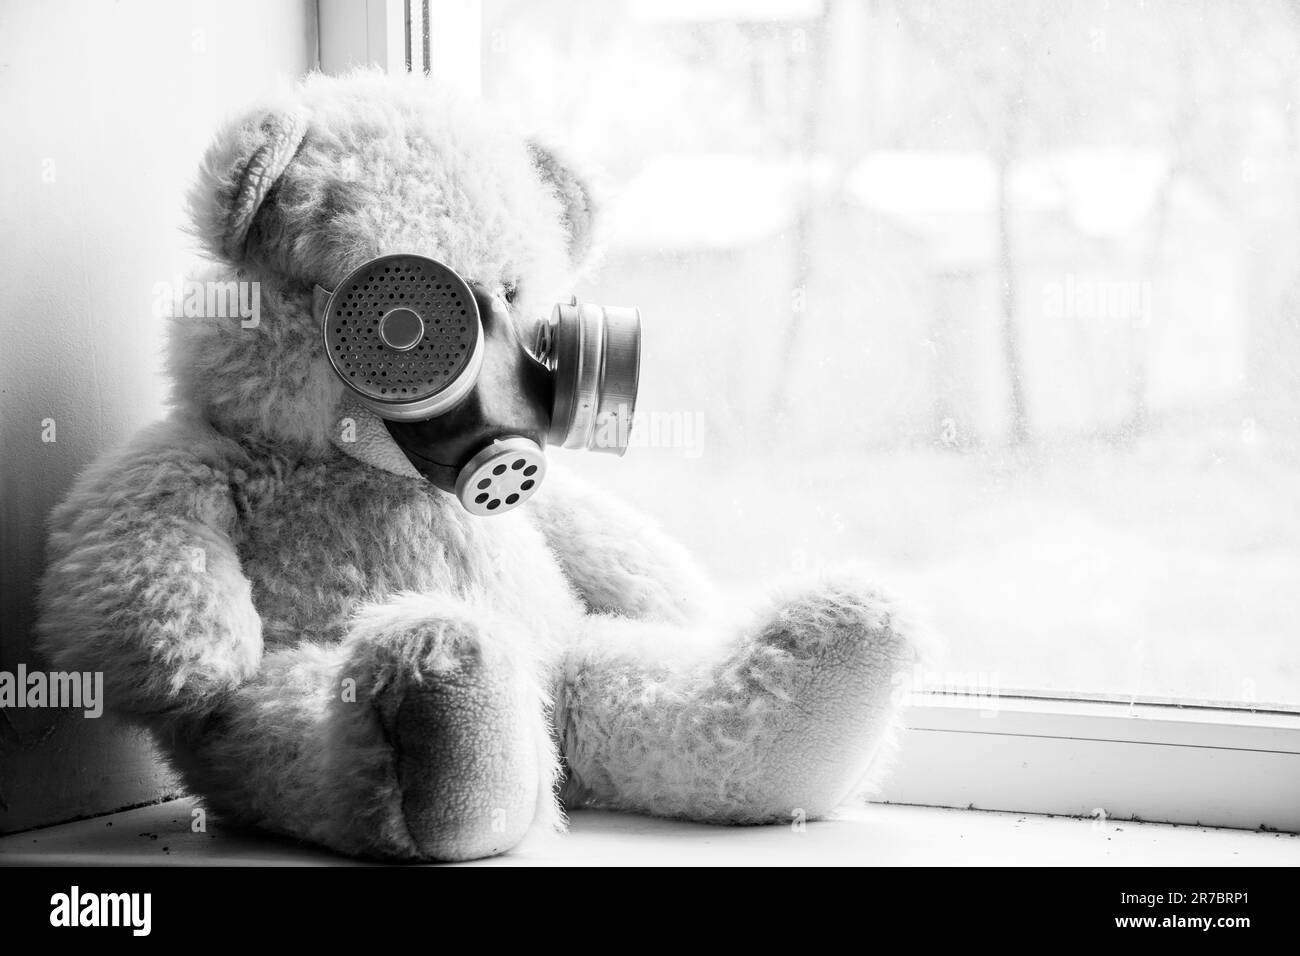 Un ours en peluche est assis sur la fenêtre d'une maison dans un masque à gaz, armes chimiques, guerre, blanc noir Banque D'Images